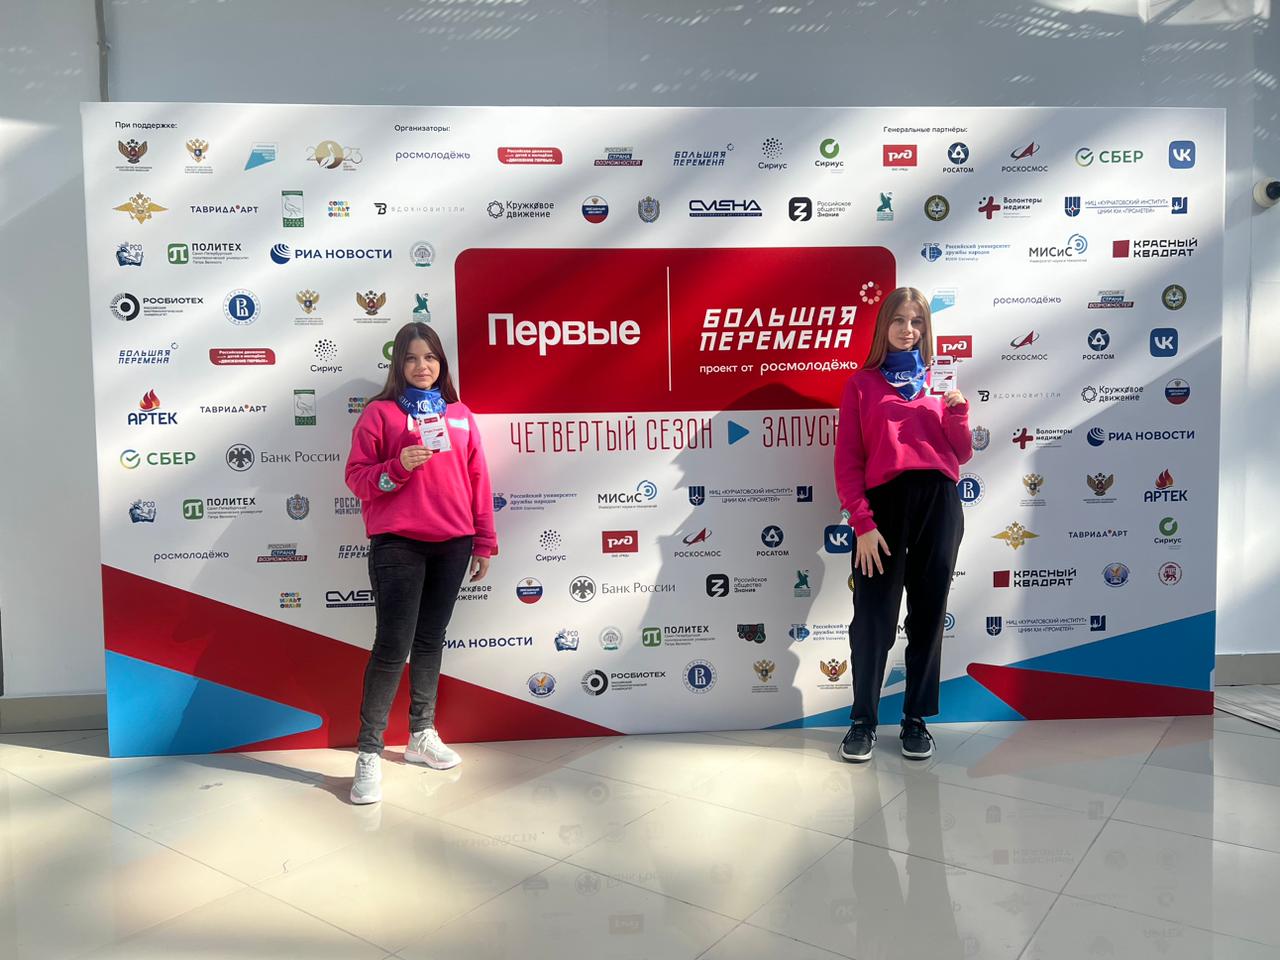 Державинцы – участники первого слета победителей Всероссийского конкурса «Большая перемена» фото анонса